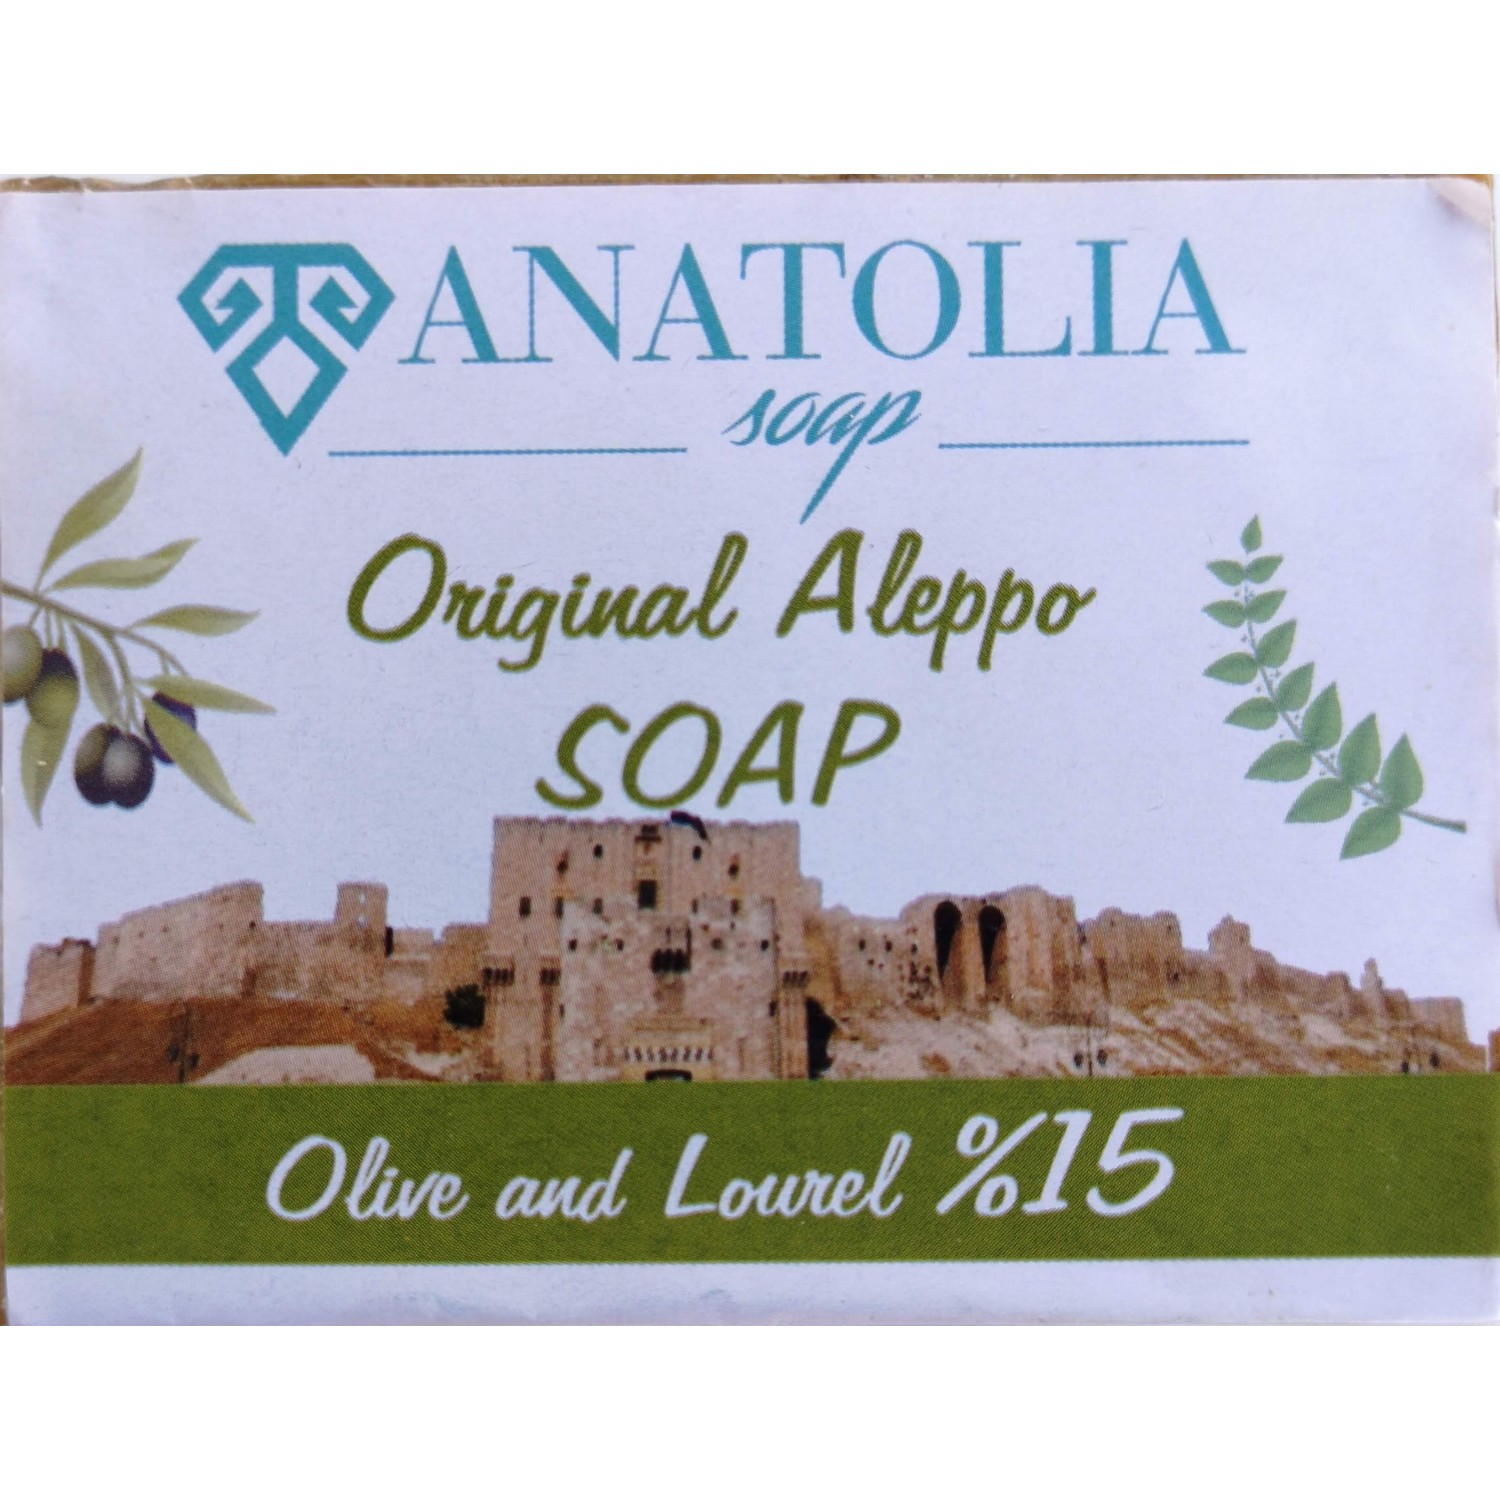 Anatolia Soap Halep Sabunu %15 Fiyatı - Taksit Seçenekleri